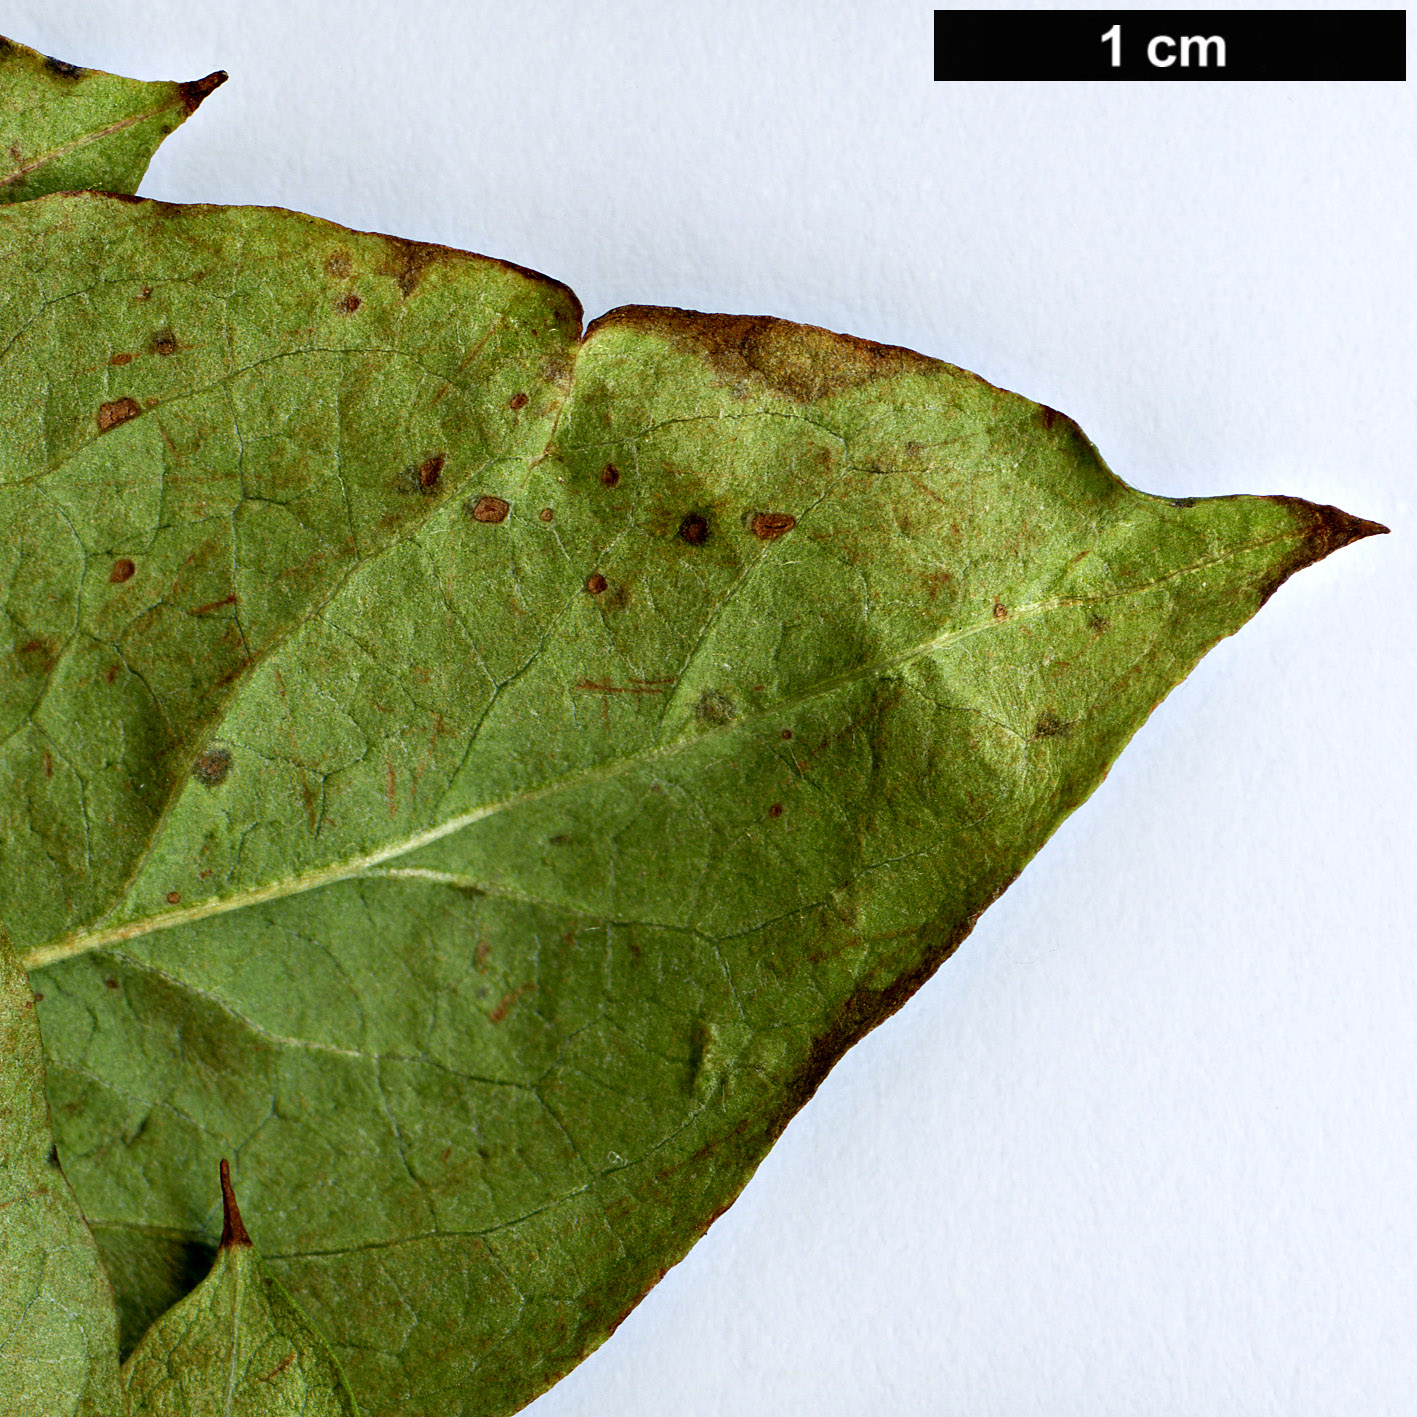 High resolution image: Family: Rosaceae - Genus: Cotoneaster - Taxon: hurusawaianus